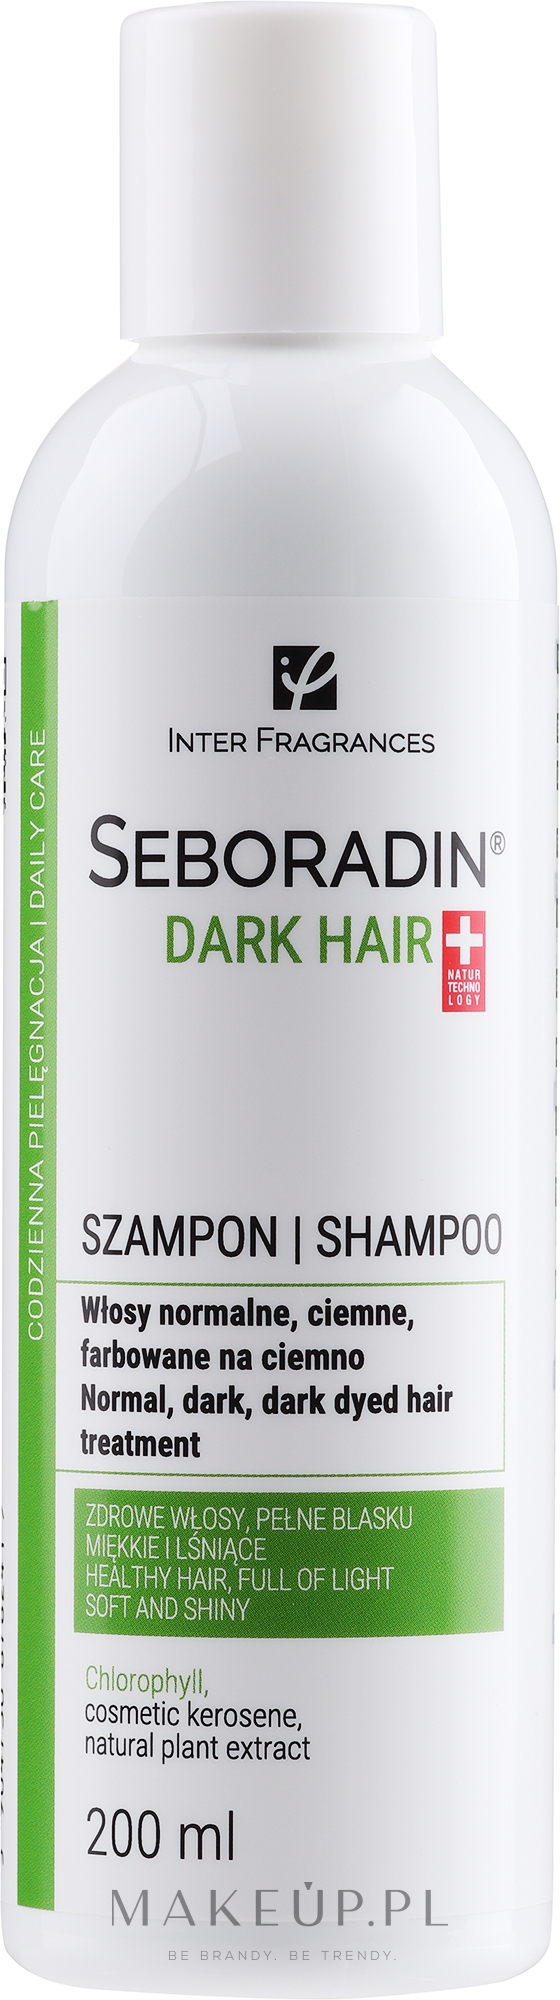 szampon seboradin do włosów ciemnych